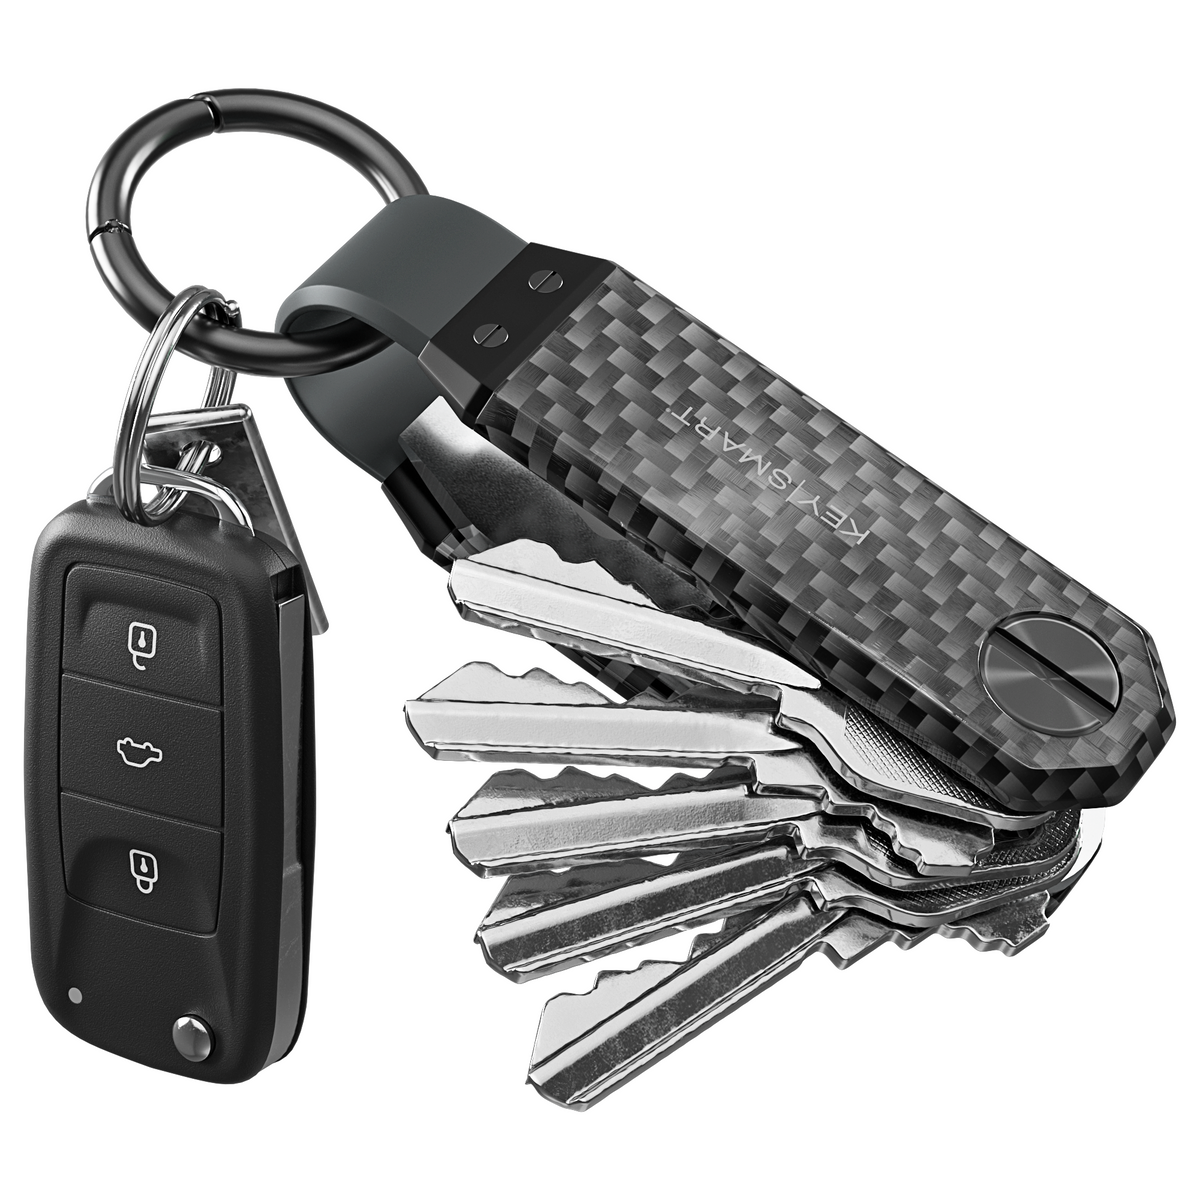 Genuine Leather Key Card Holder Wallet Keys Fob Organizer 